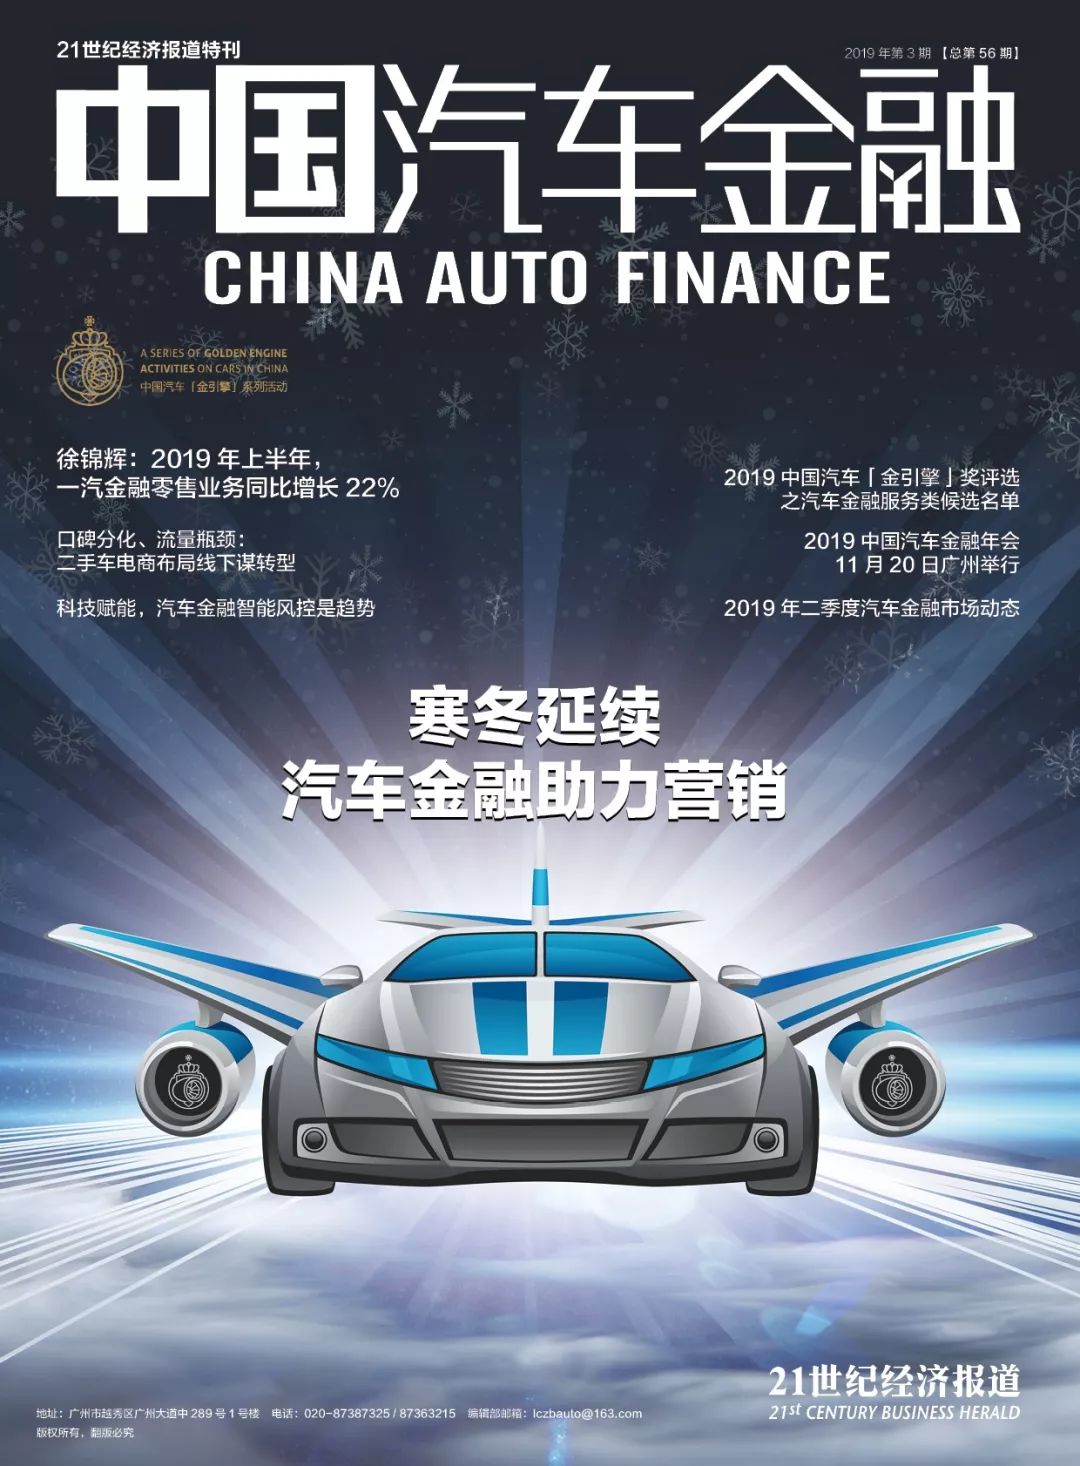 2019《中国汽车金融》第三期电子杂志,火热上线!(附领取方法)